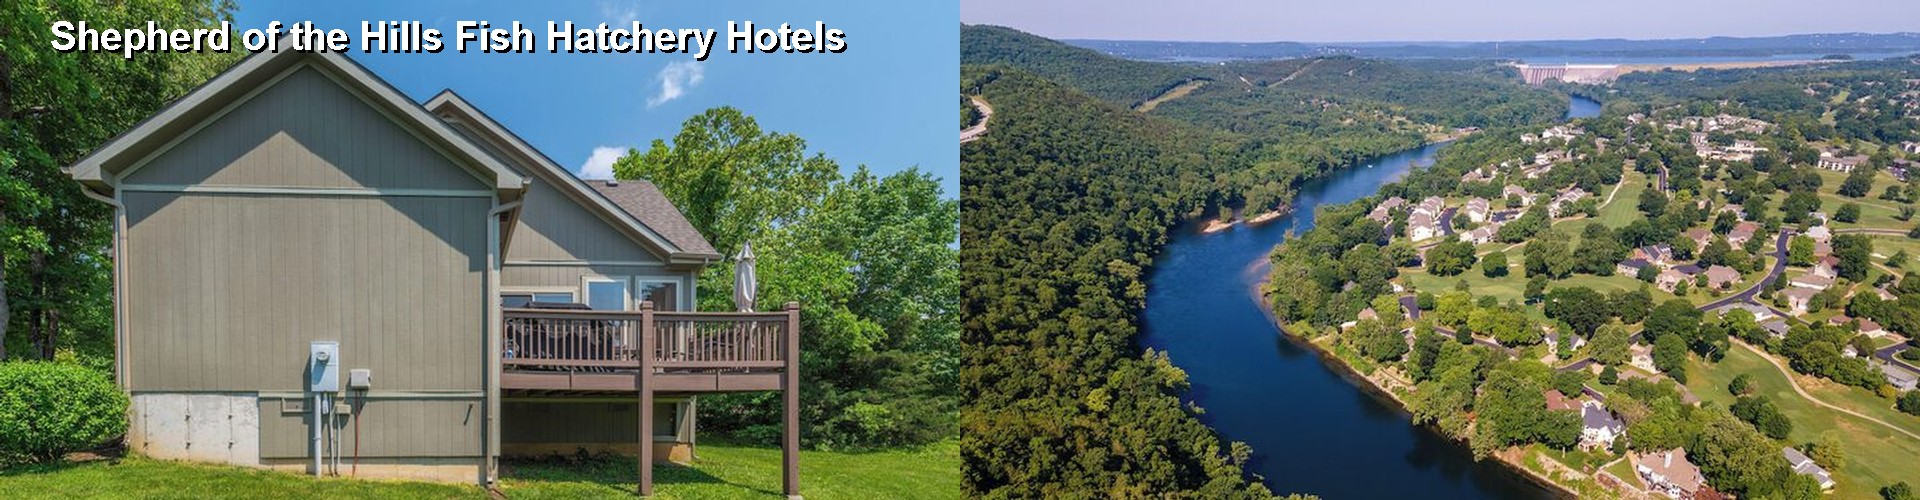 5 Best Hotels near Shepherd of the Hills Fish Hatchery